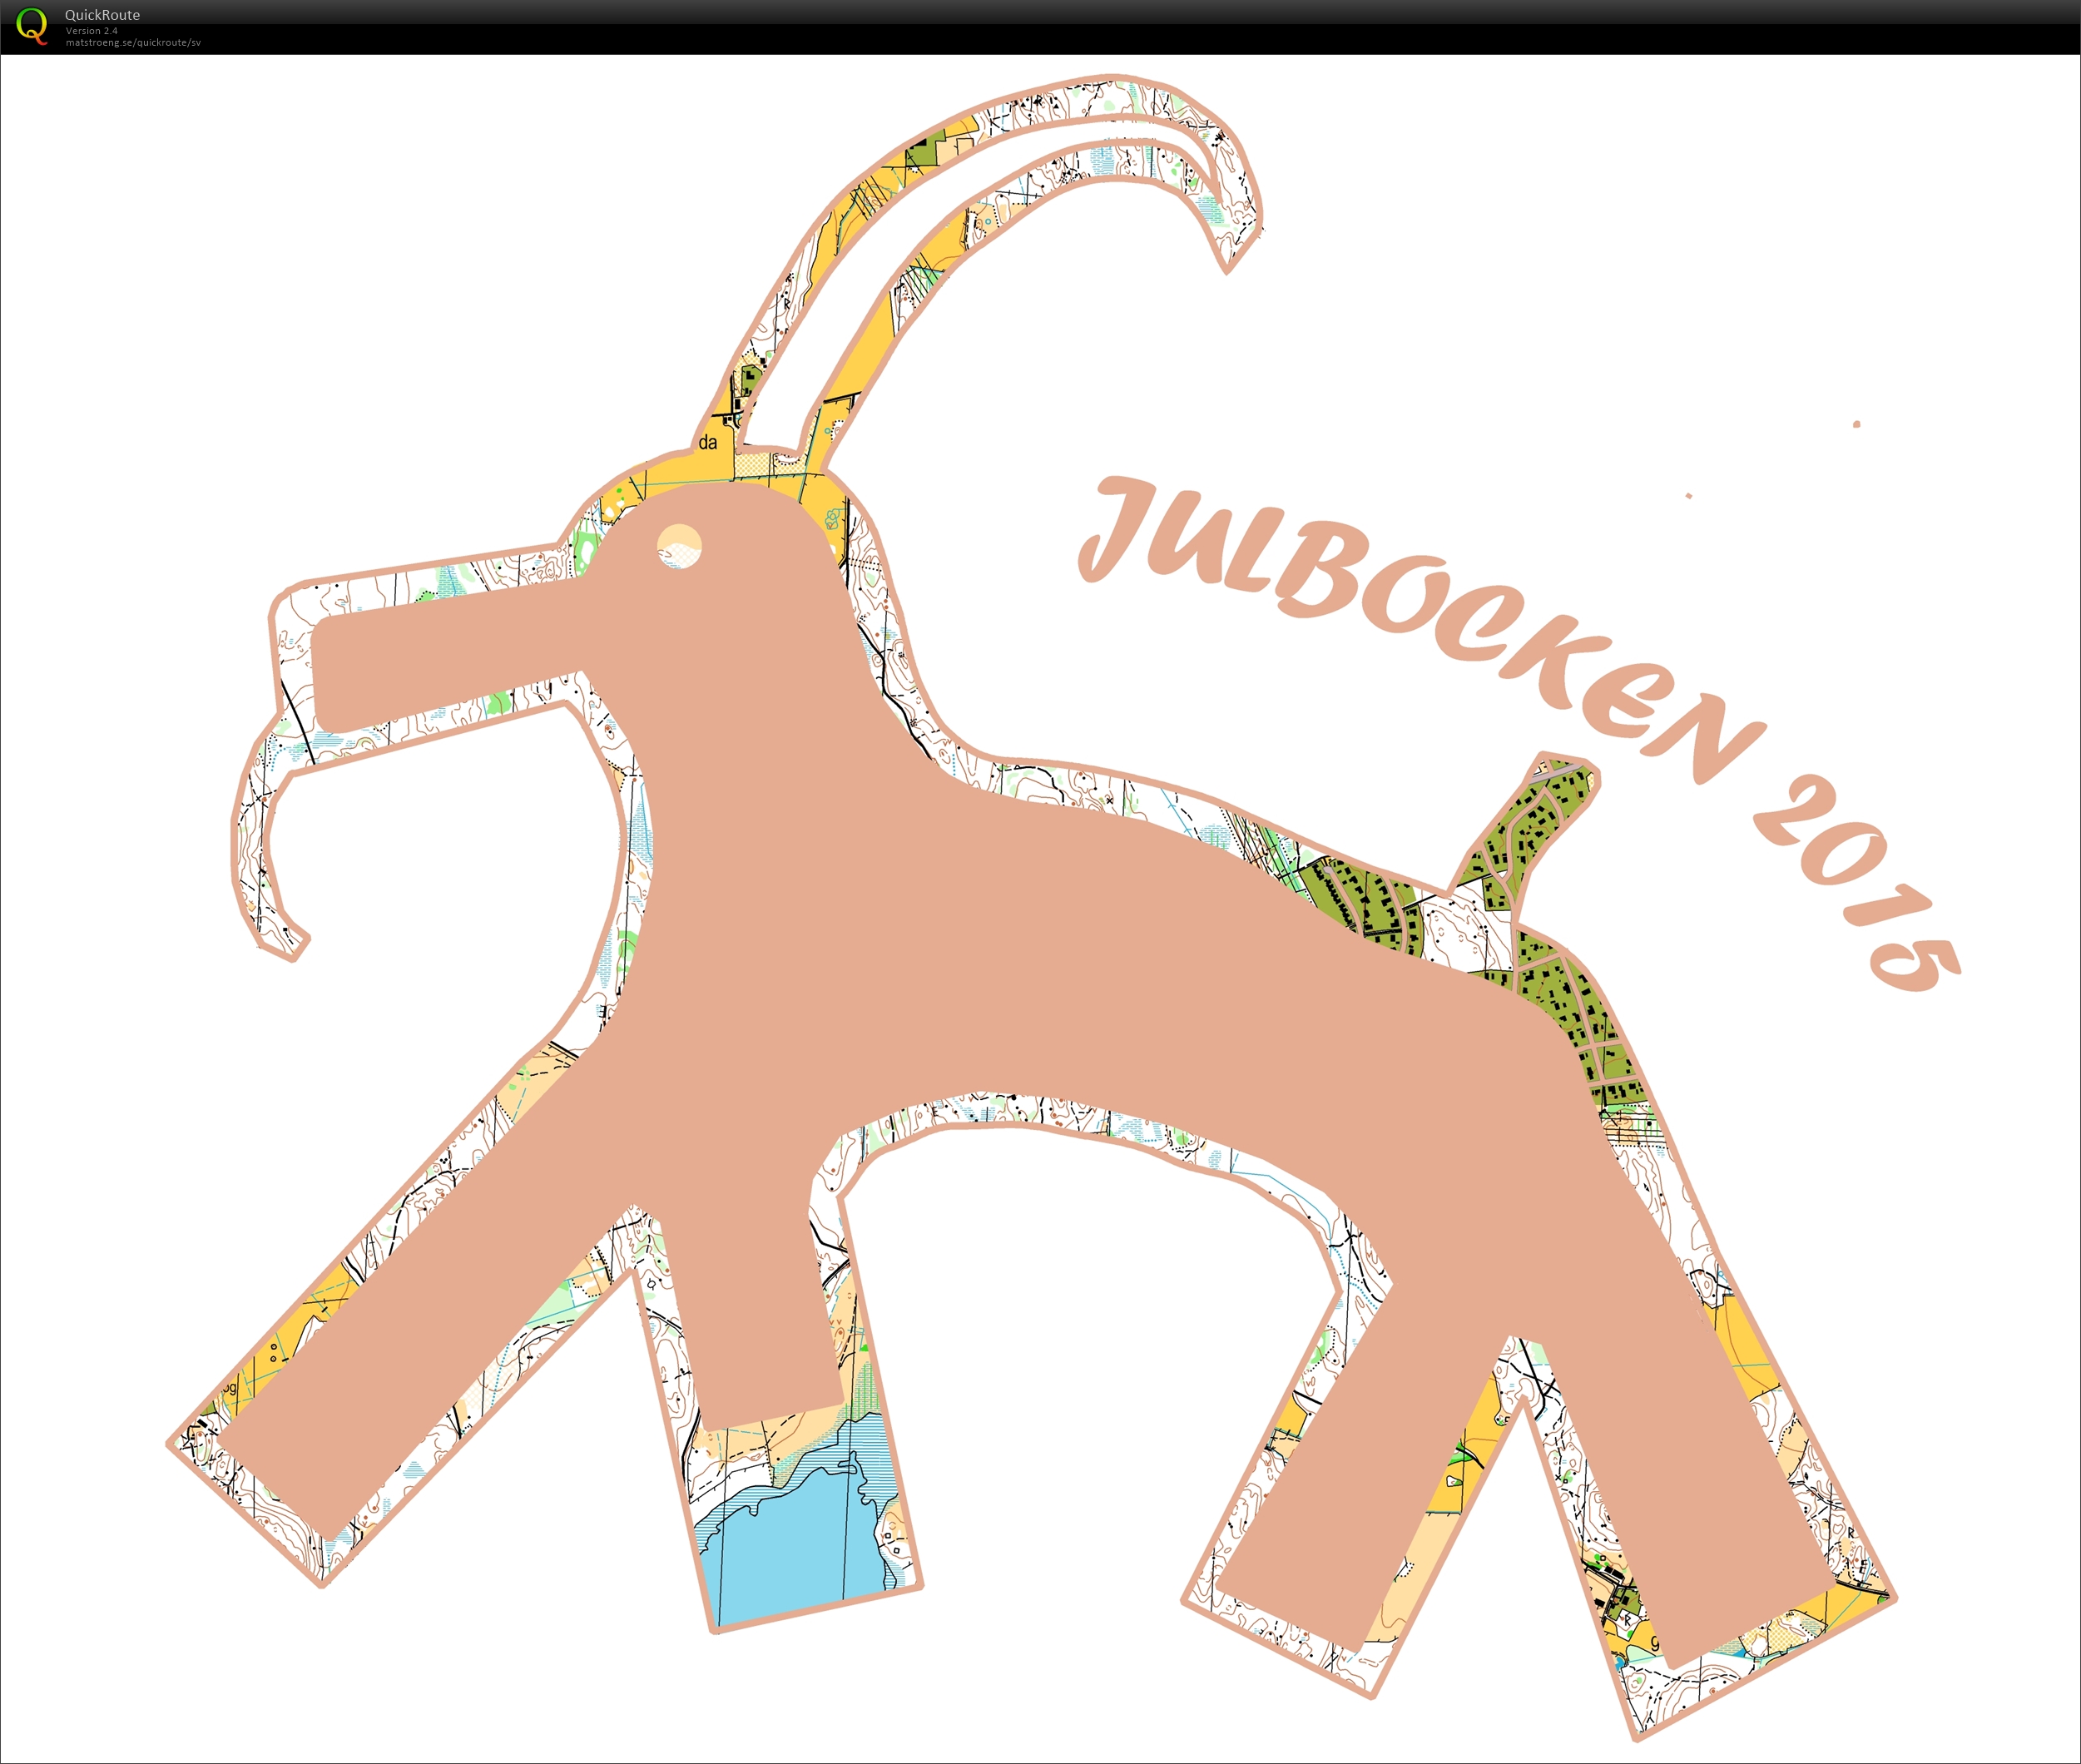 Pasta20:s Julkul - Julbocken (26-12-2015)